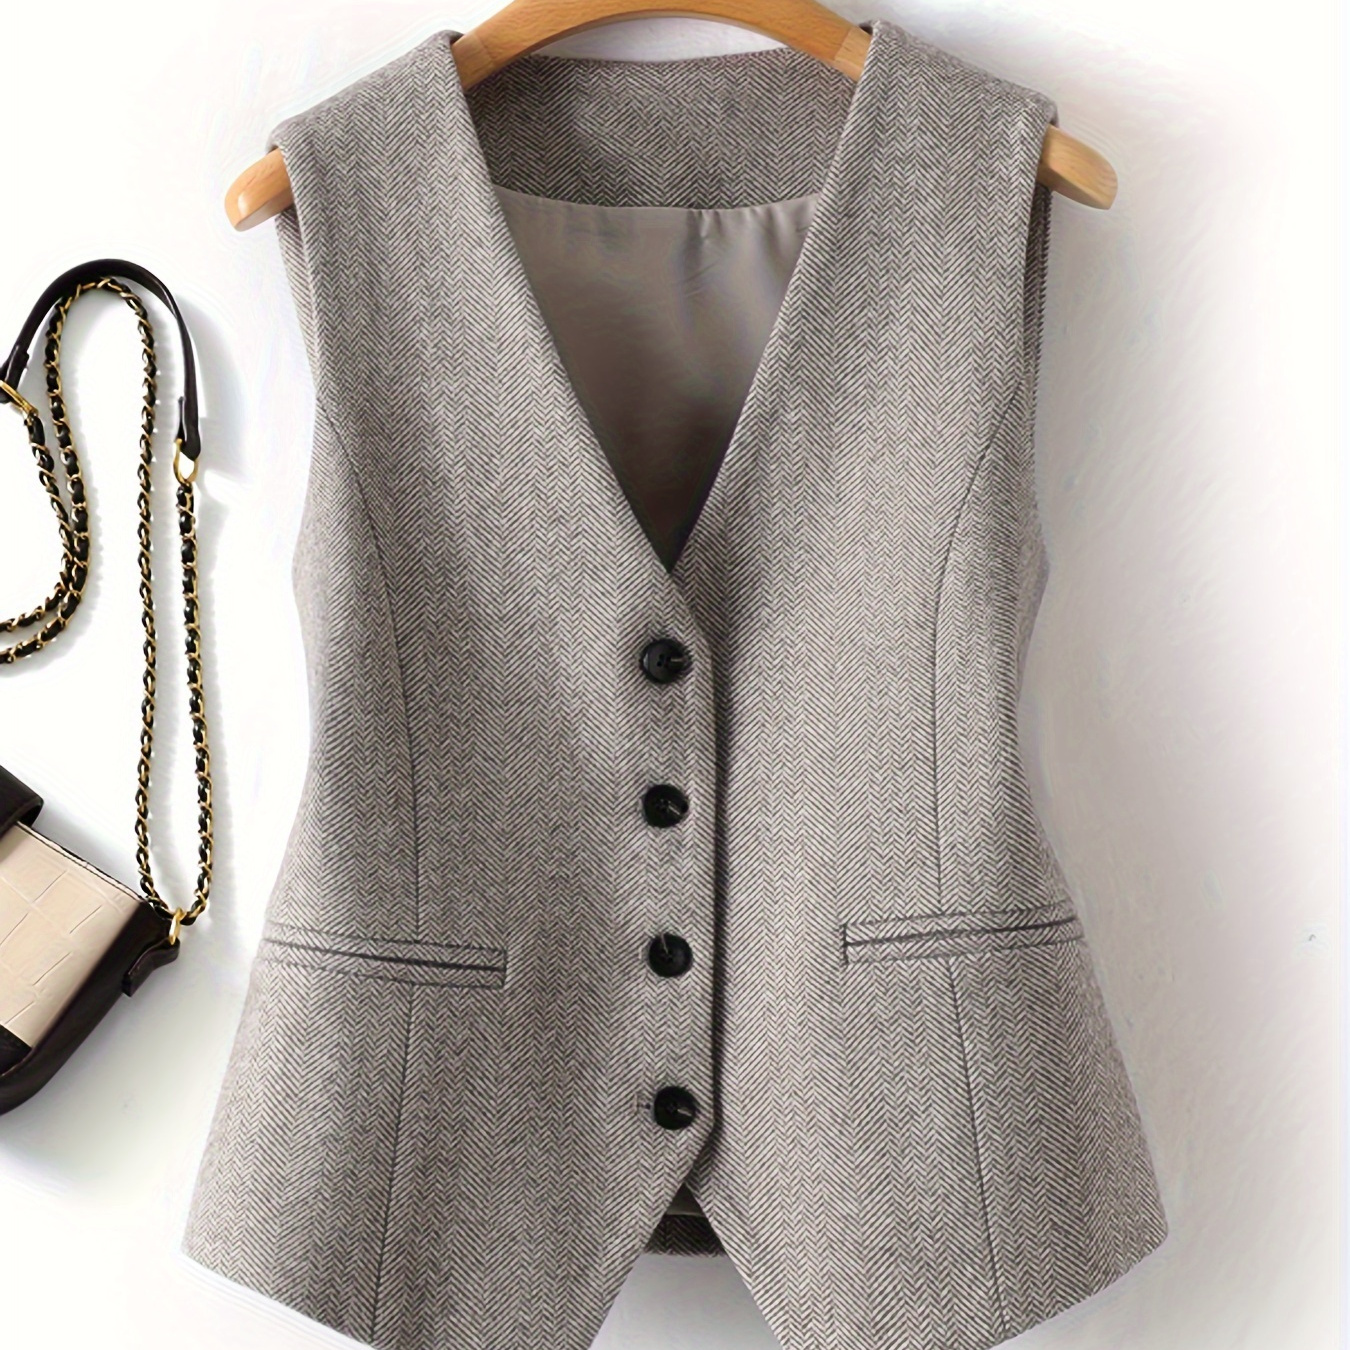 

Single Breasted V Neck Vest, Elegant Sleeveless Outerwear For Spring & Fall, Women's Clothing